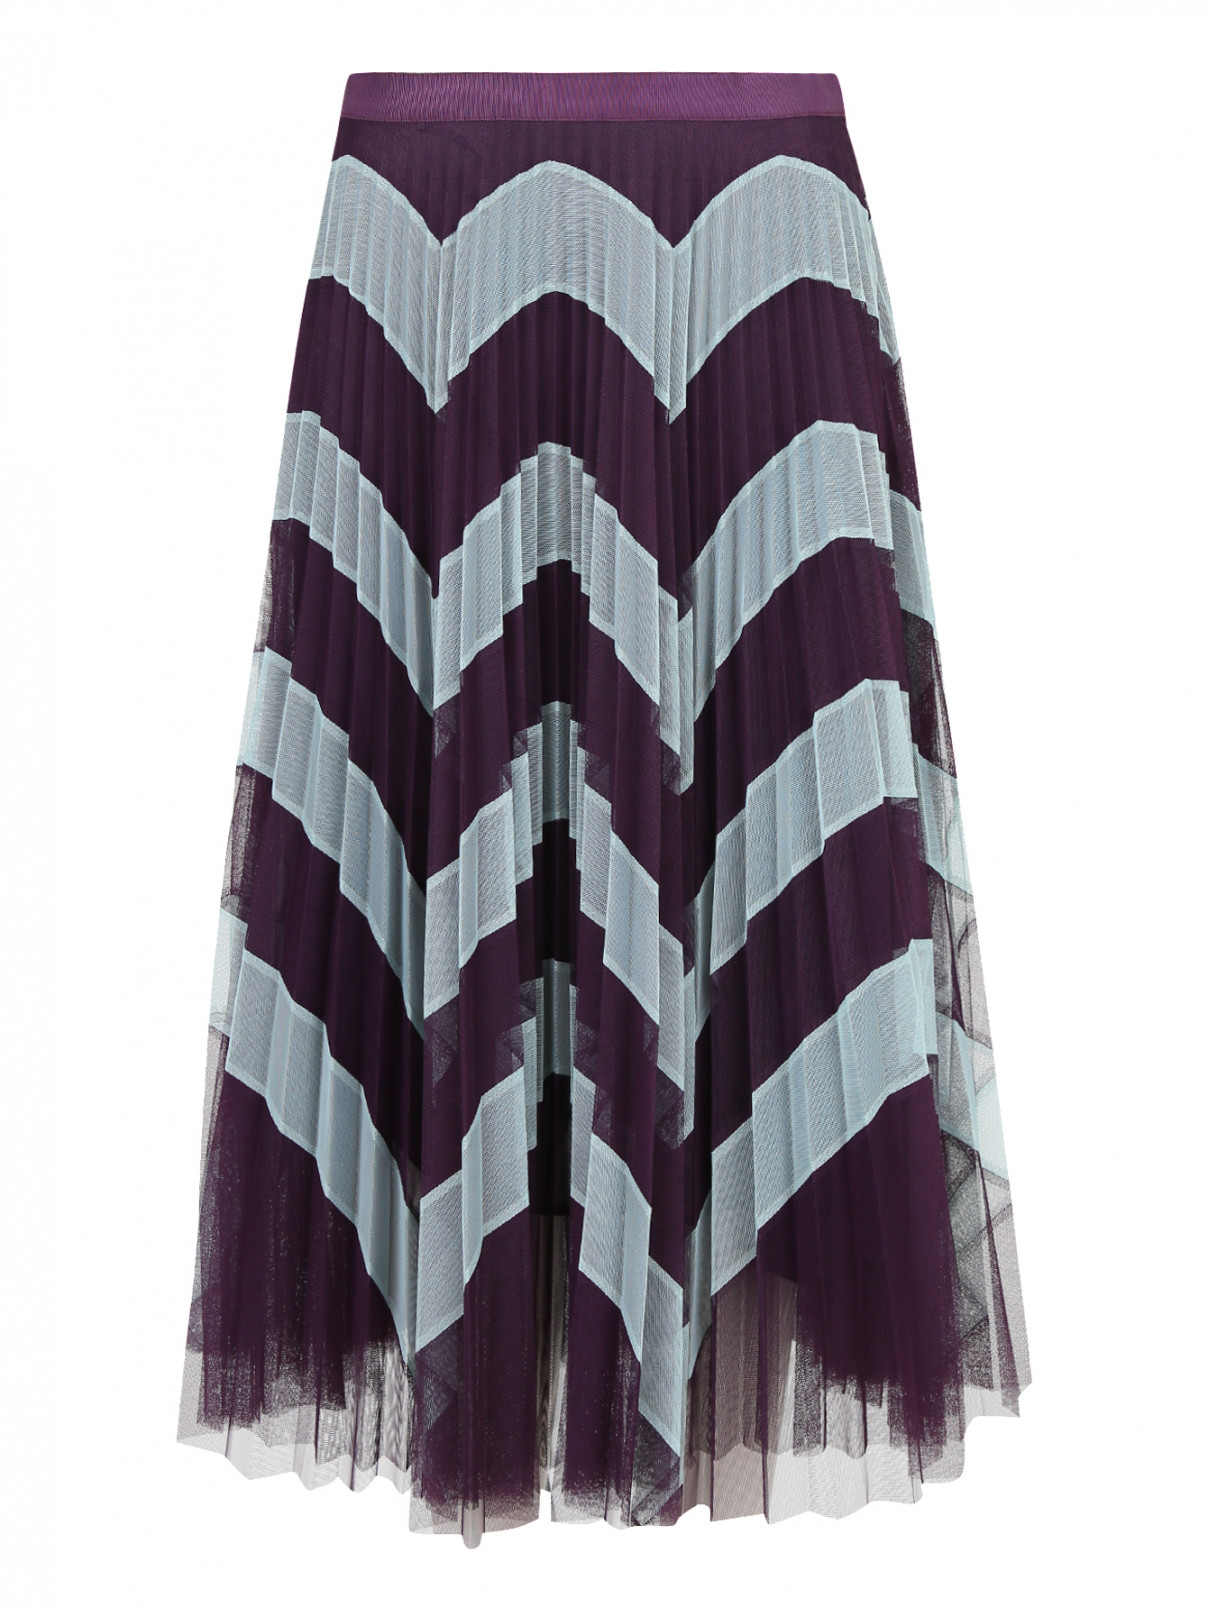 Юбка из плиссированной ткани с узором Mary Katrantzou  –  Общий вид  – Цвет:  Фиолетовый